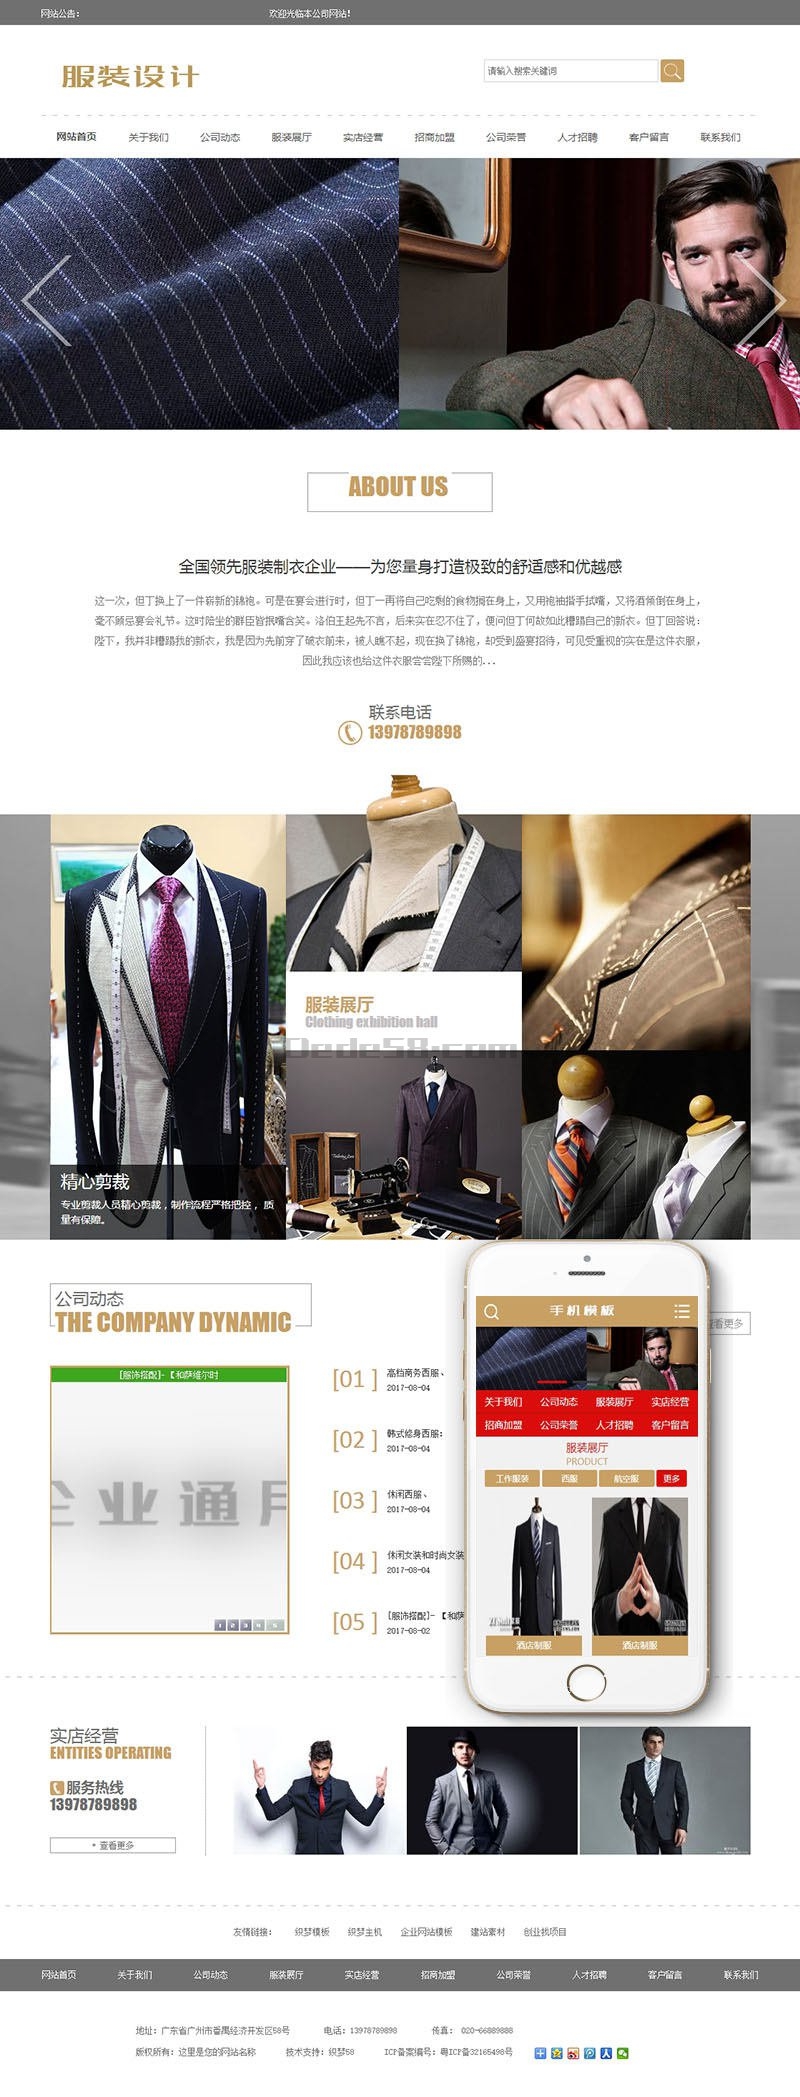 服装设计展示企业网站源码 dedecms织梦模板 PC+带手机端